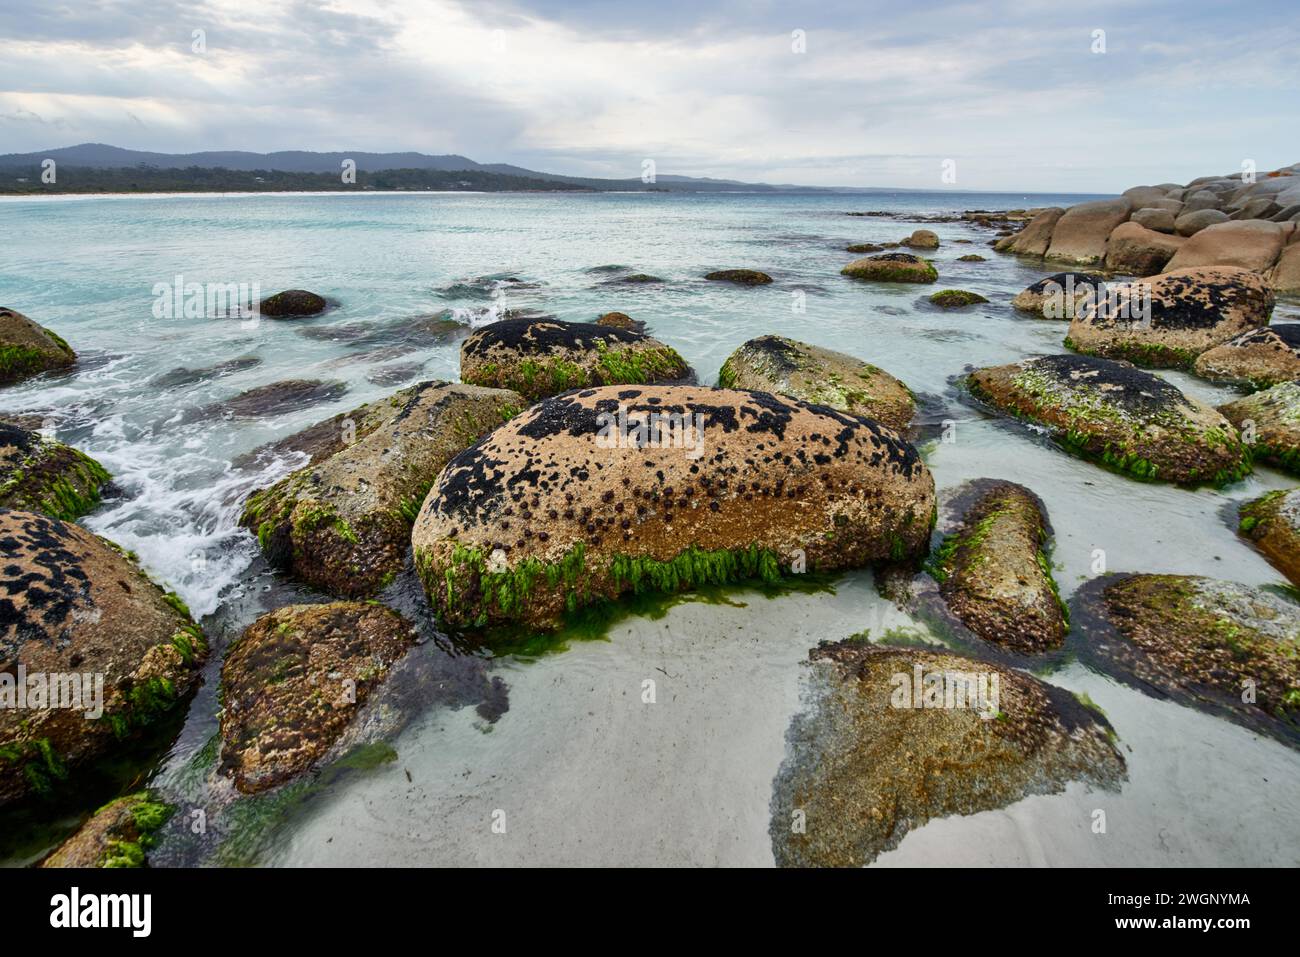 Rocce ricoperte di muschio e alghe marine in acque poco profonde di un mare aperto Foto Stock